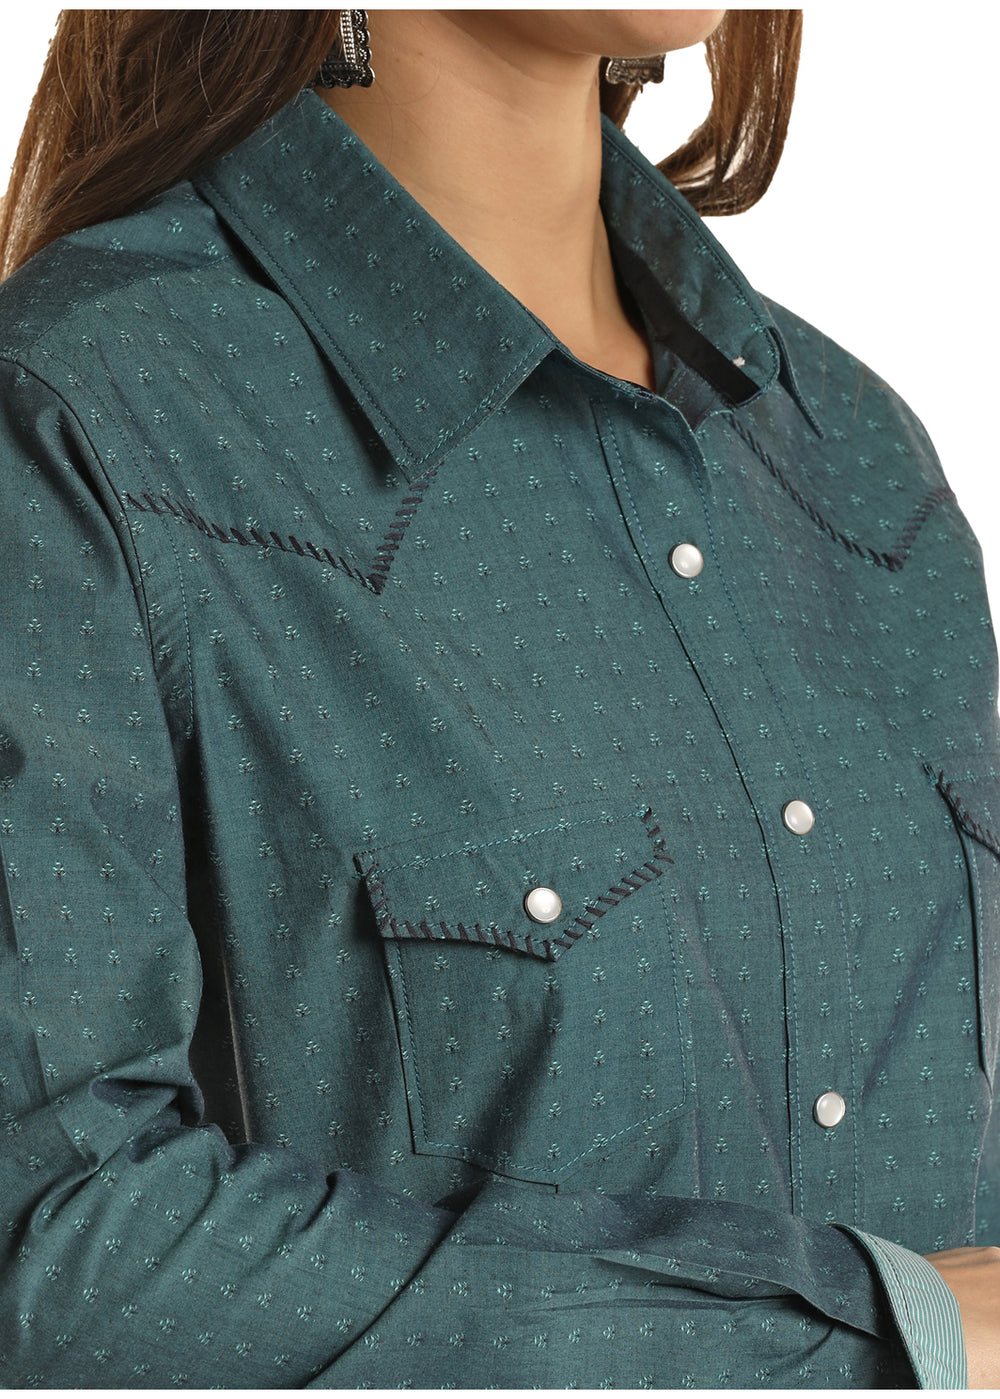 Panhandle - Women's Long Sleeve Snap Shirt